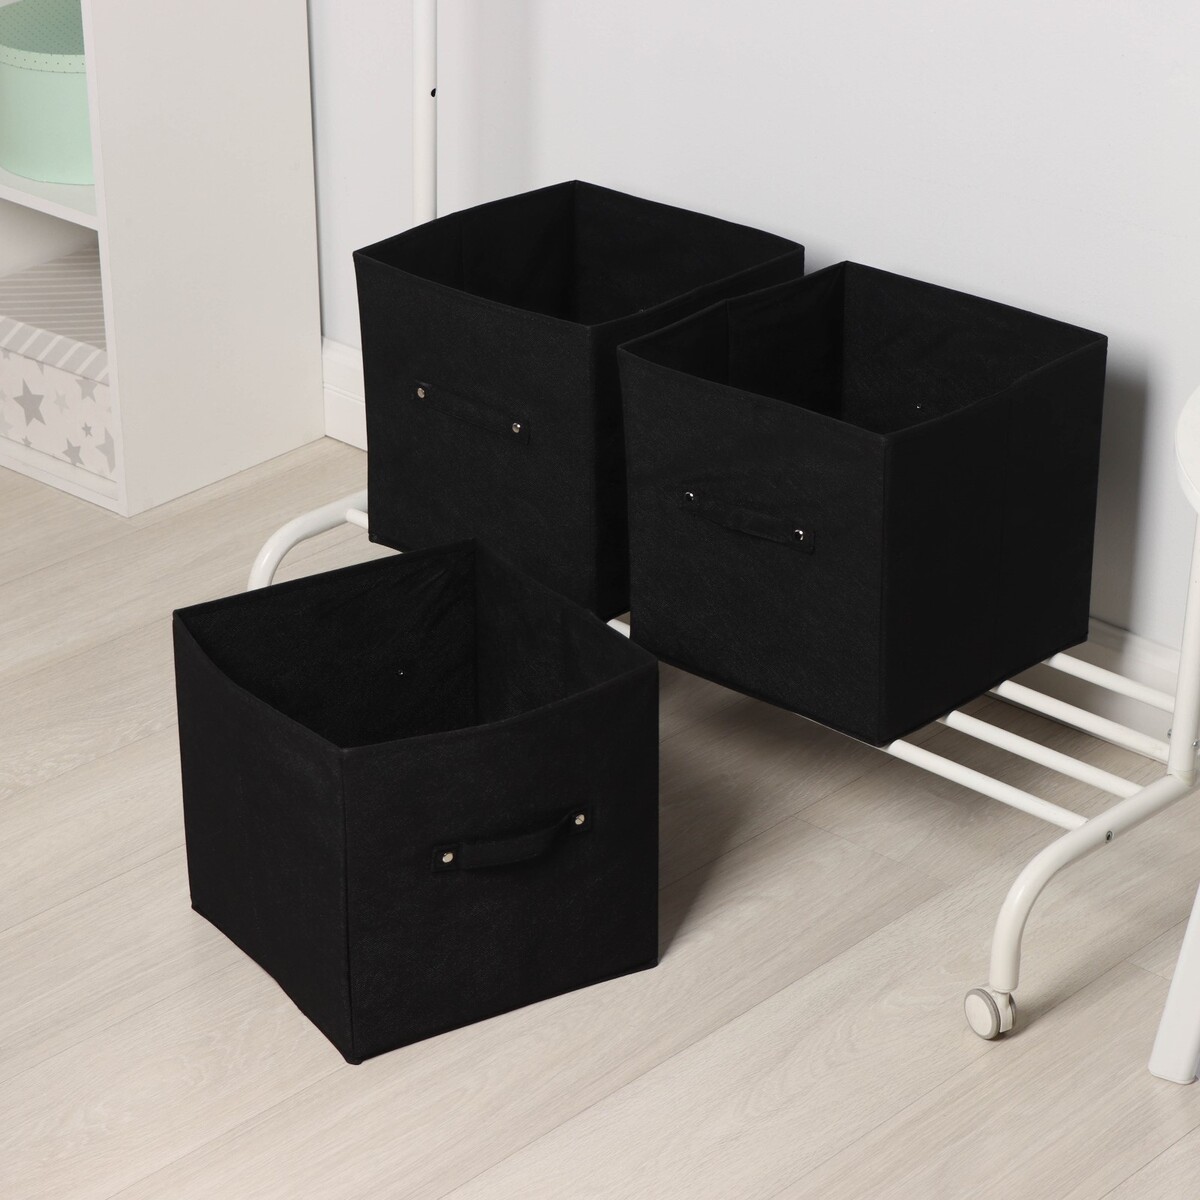 Короба для хранения вещей складные, без крышек, набор из 3 шт, 31×31×31 см, цвет черный